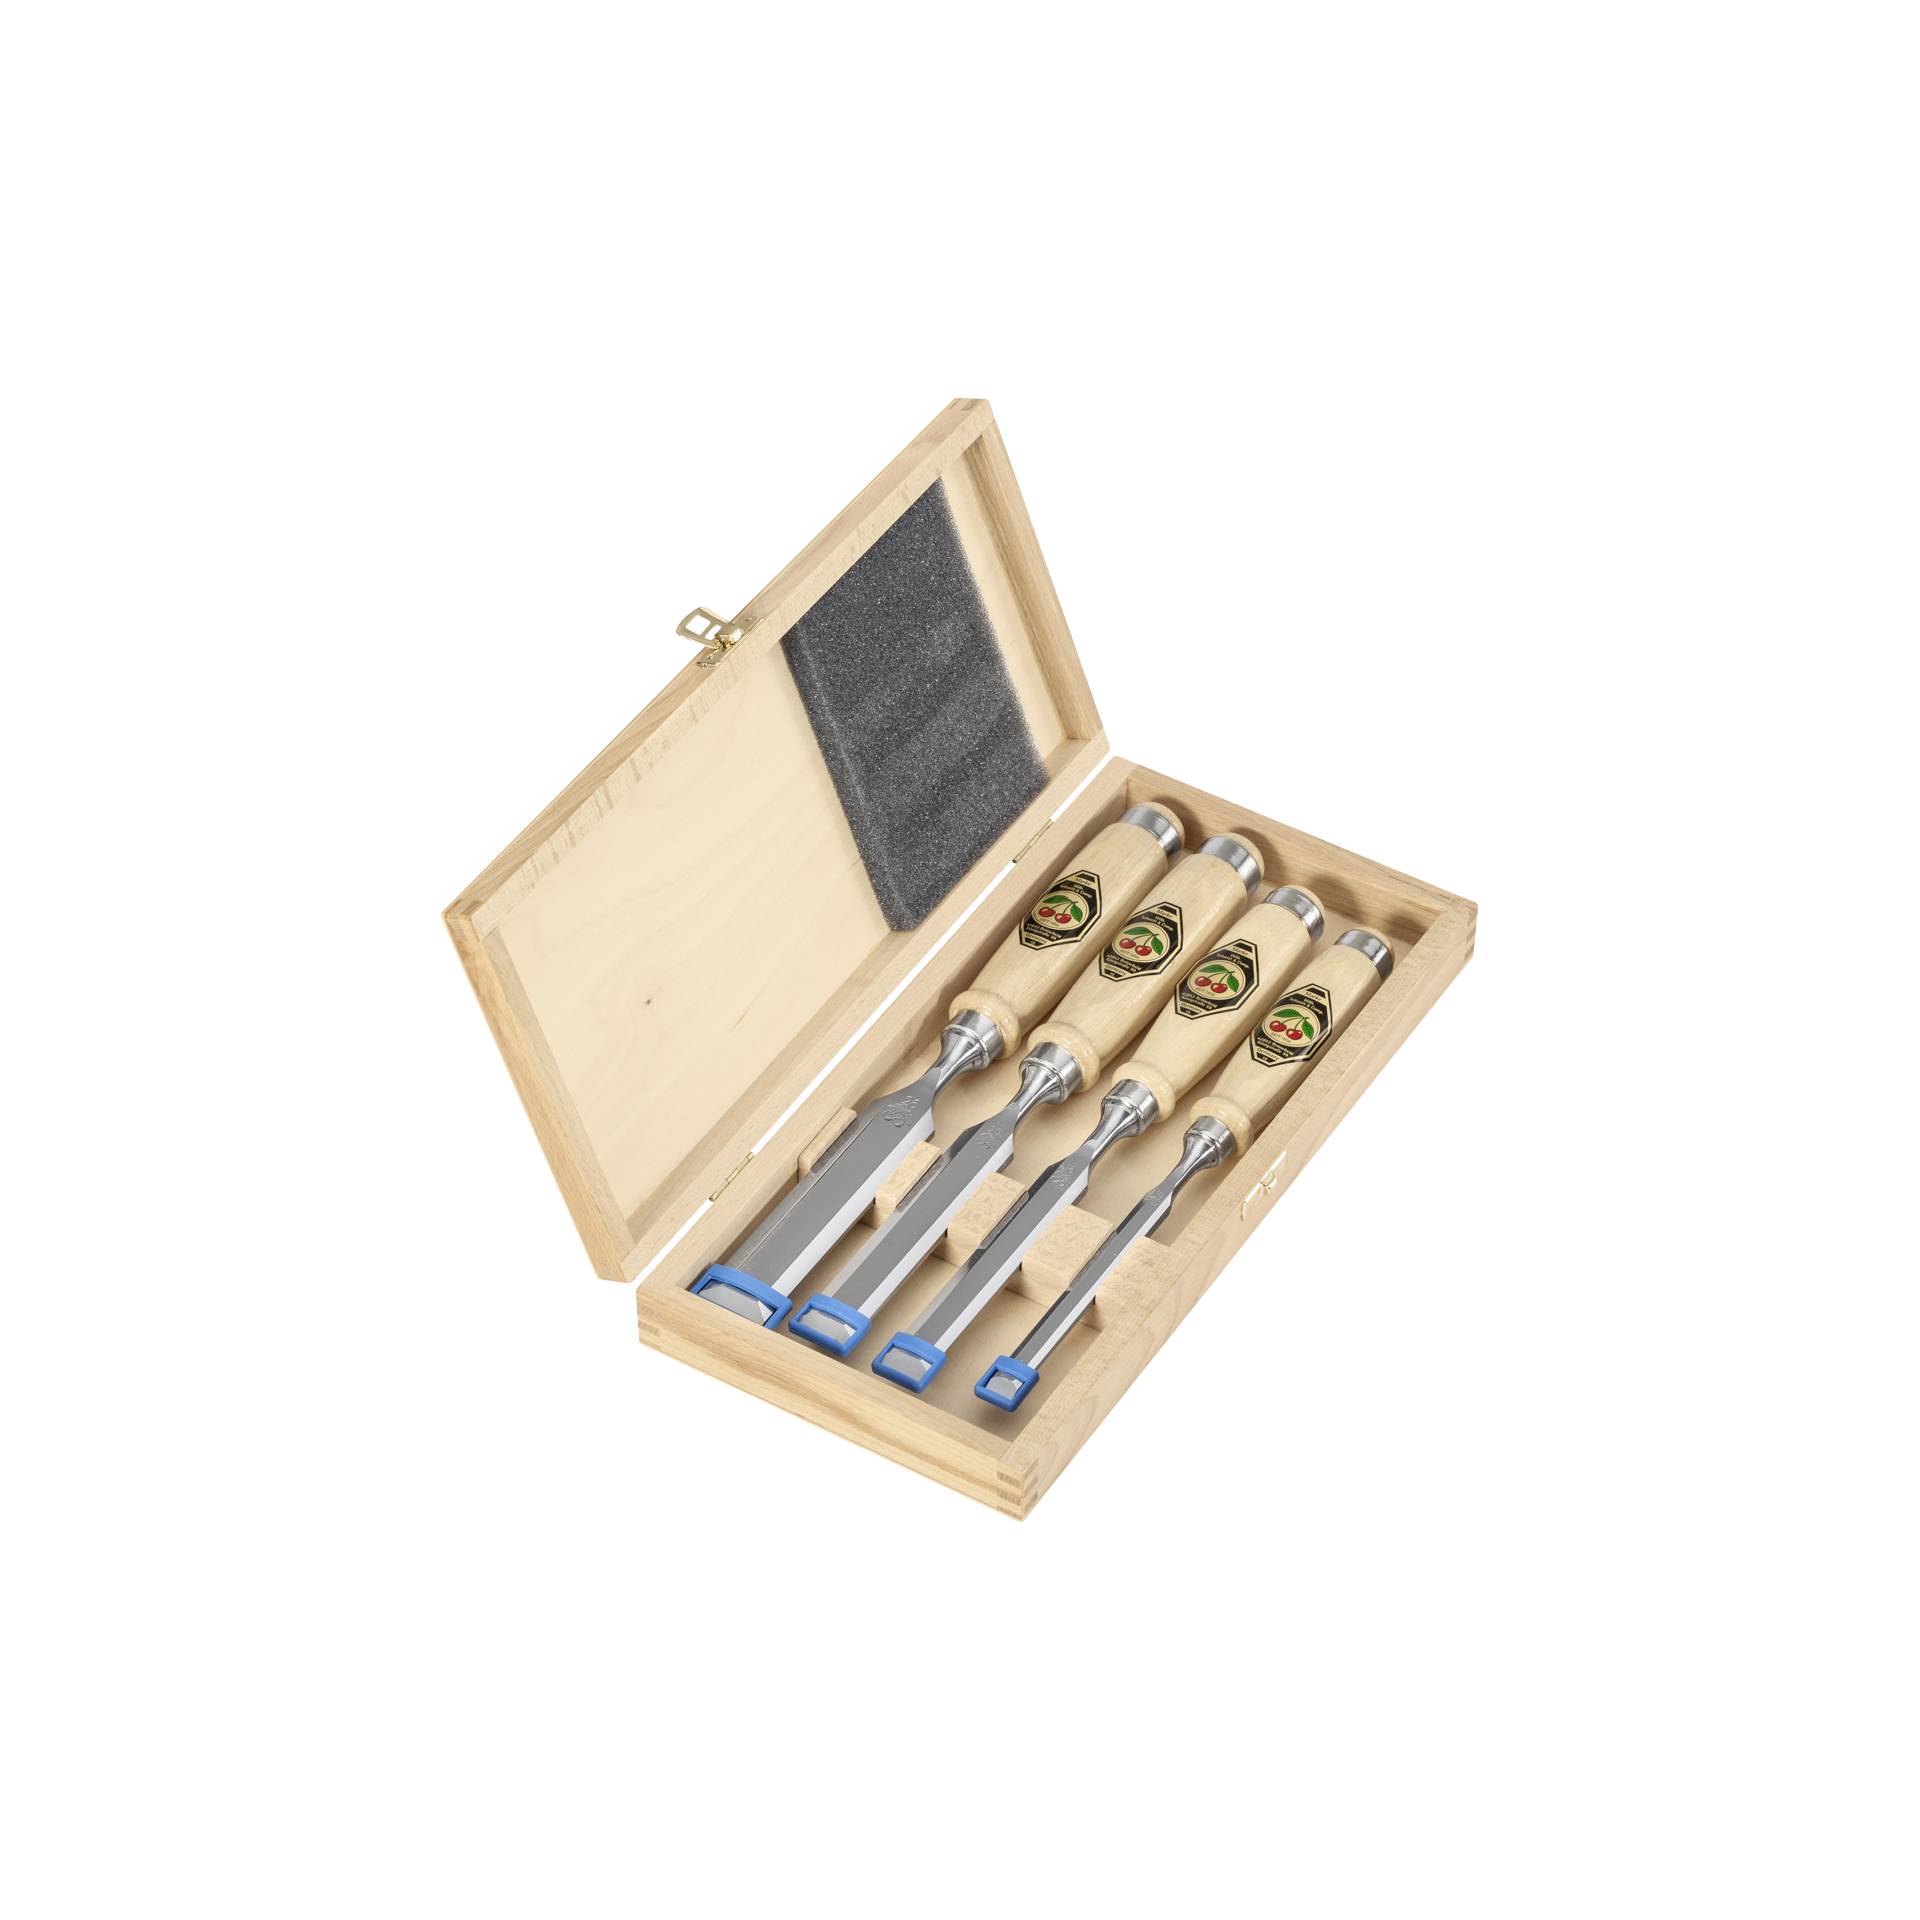 Kirschen set scalpelli 1141 HK 4 pezzi in cassetta di legno